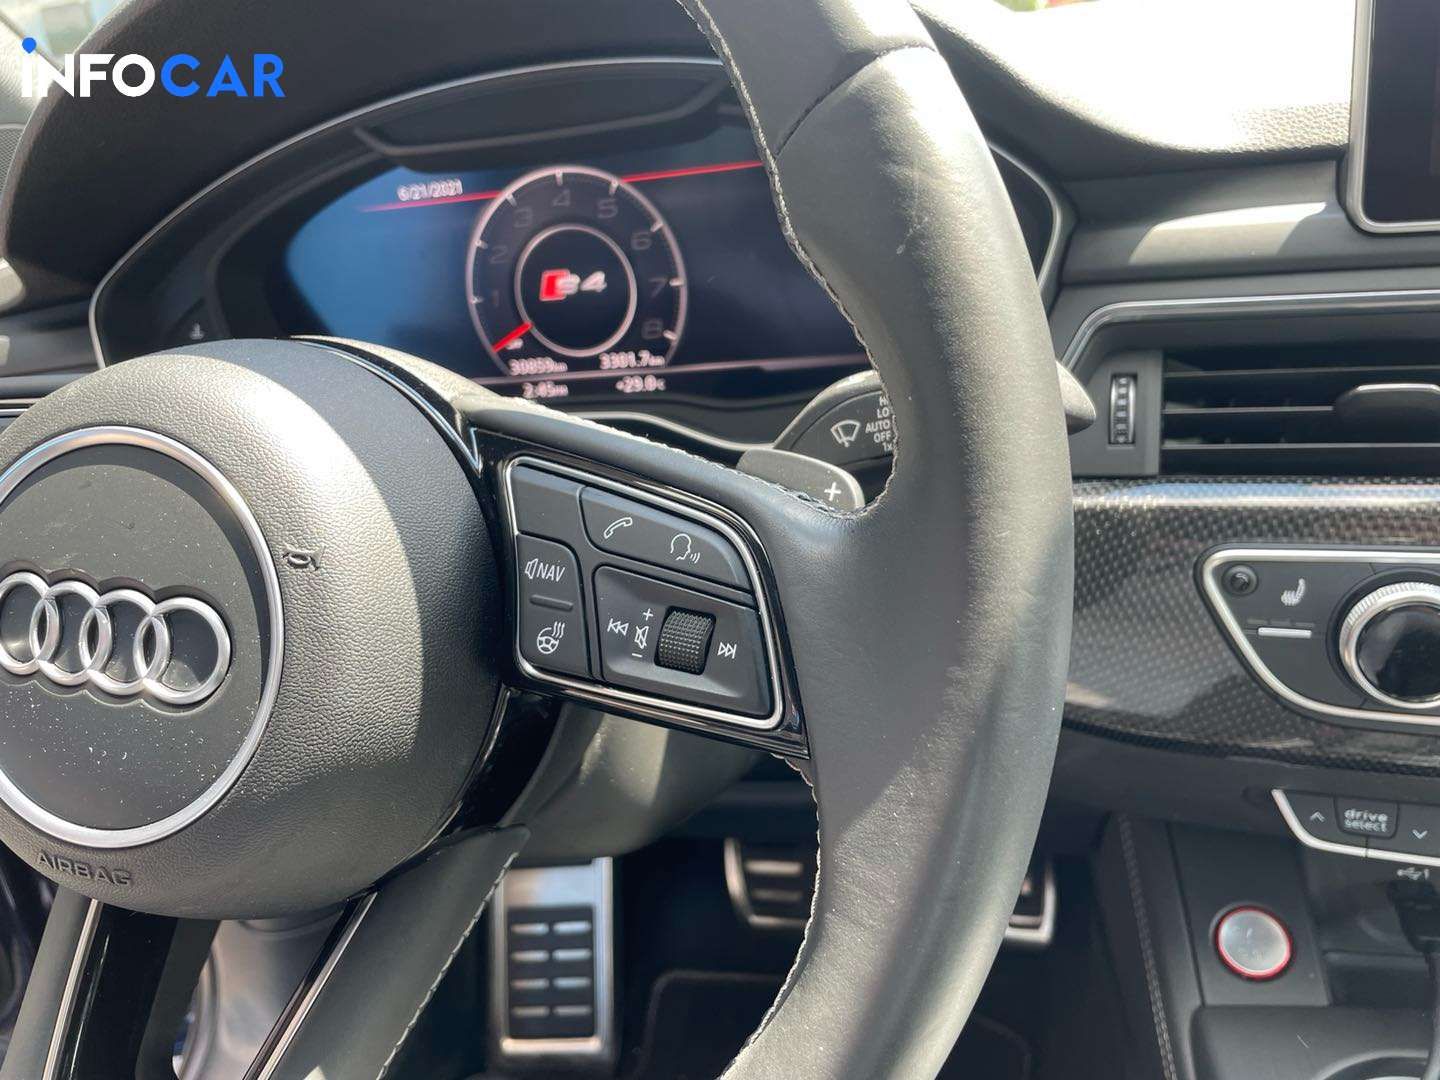 2018 Audi S4 technik - INFOCAR - Toronto Auto Trading Platform